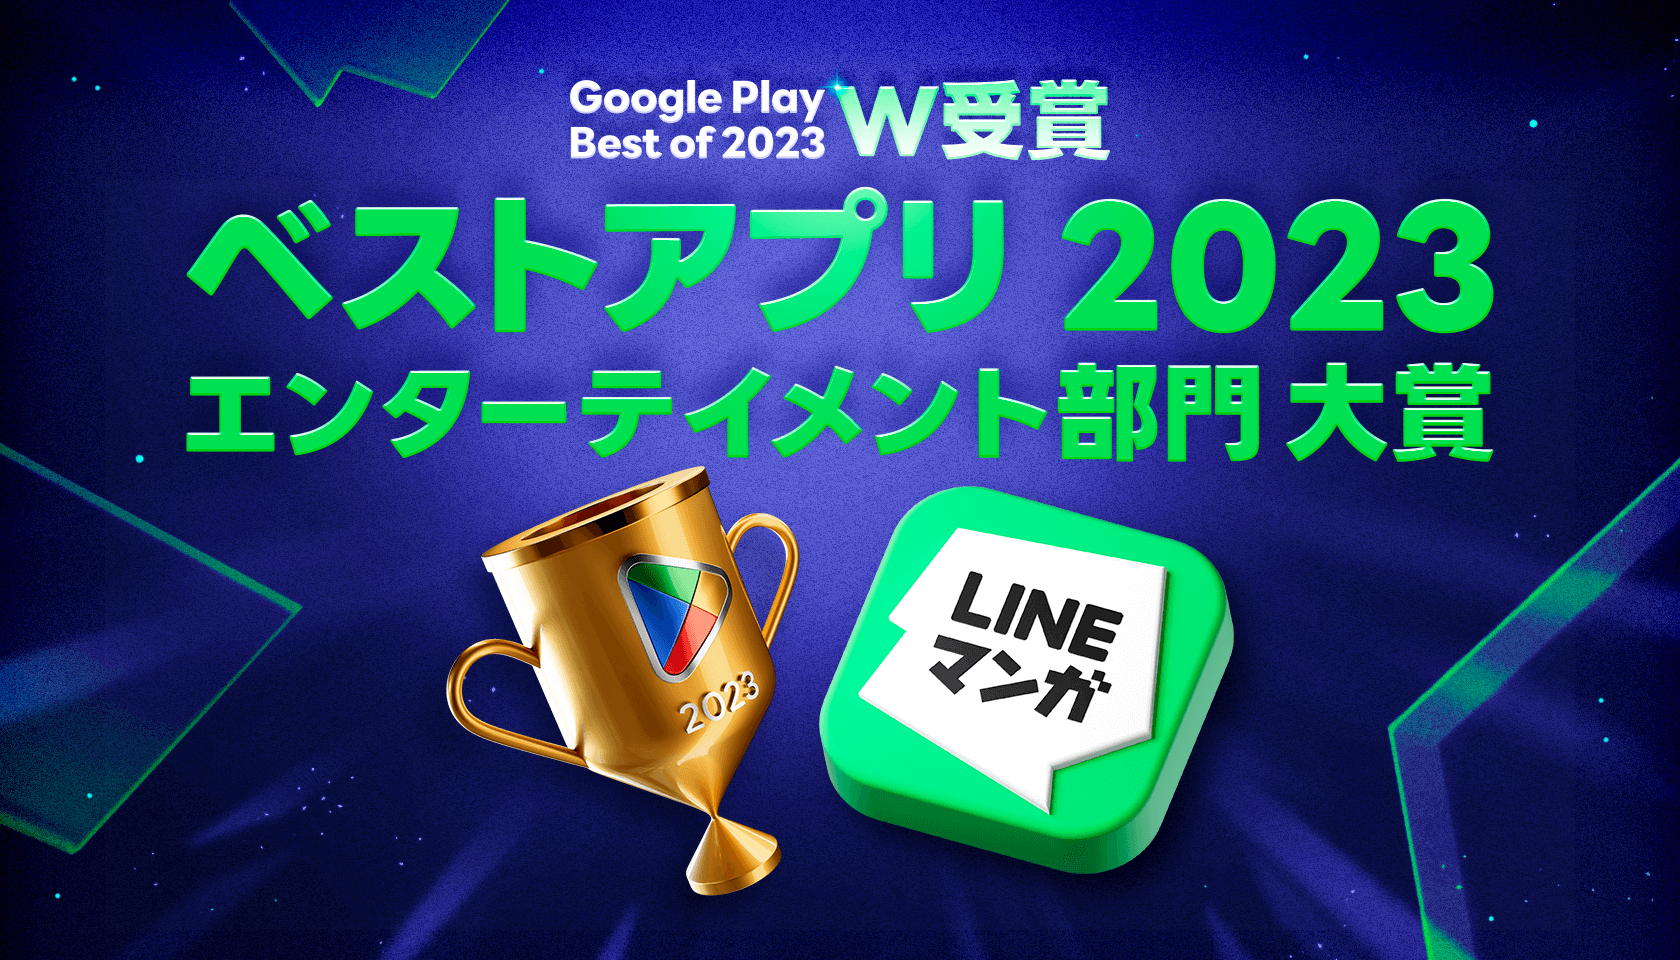 231202 [네이버웹툰 이미지] 라인망가, 일본 구글플레이 선정 올해의 인기 앱 2관왕.png